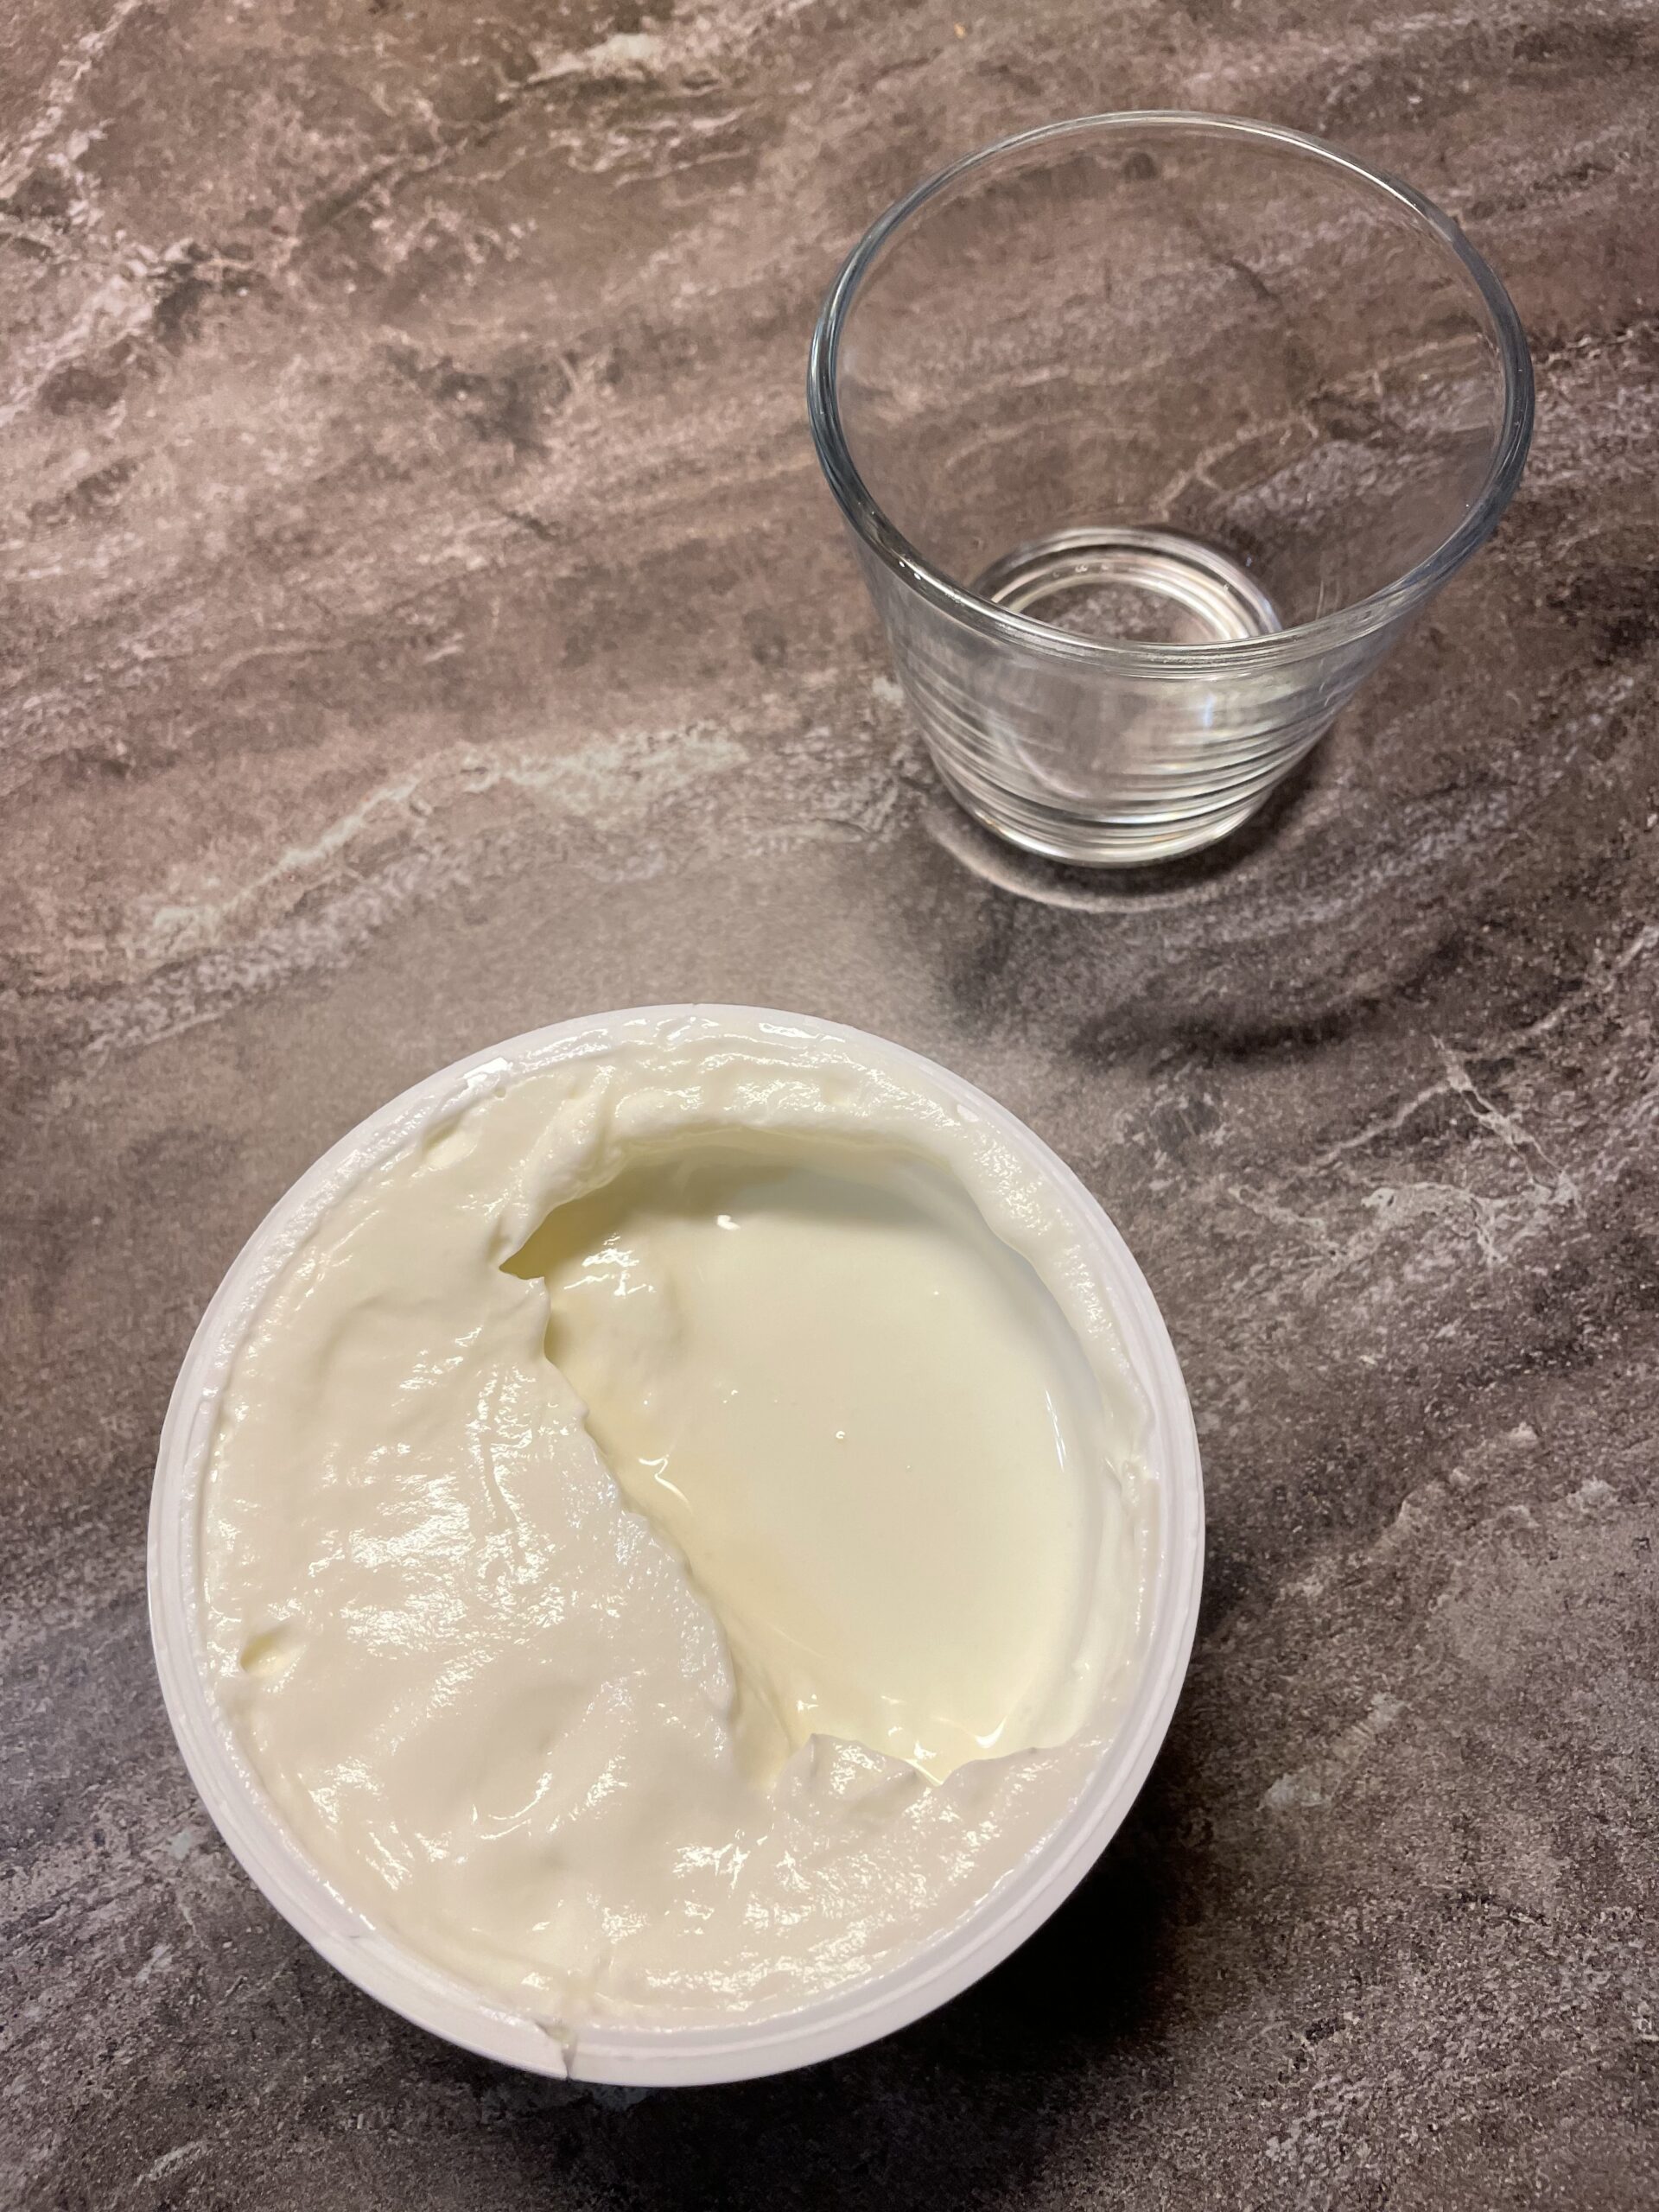 Bild zum Schritt 4 für das Bastel- und DIY-Abenteuer für Kinder: 'Jetzt füllt ihr zwei bis drei Esslöffel cremigen Naturjoghurt in...'